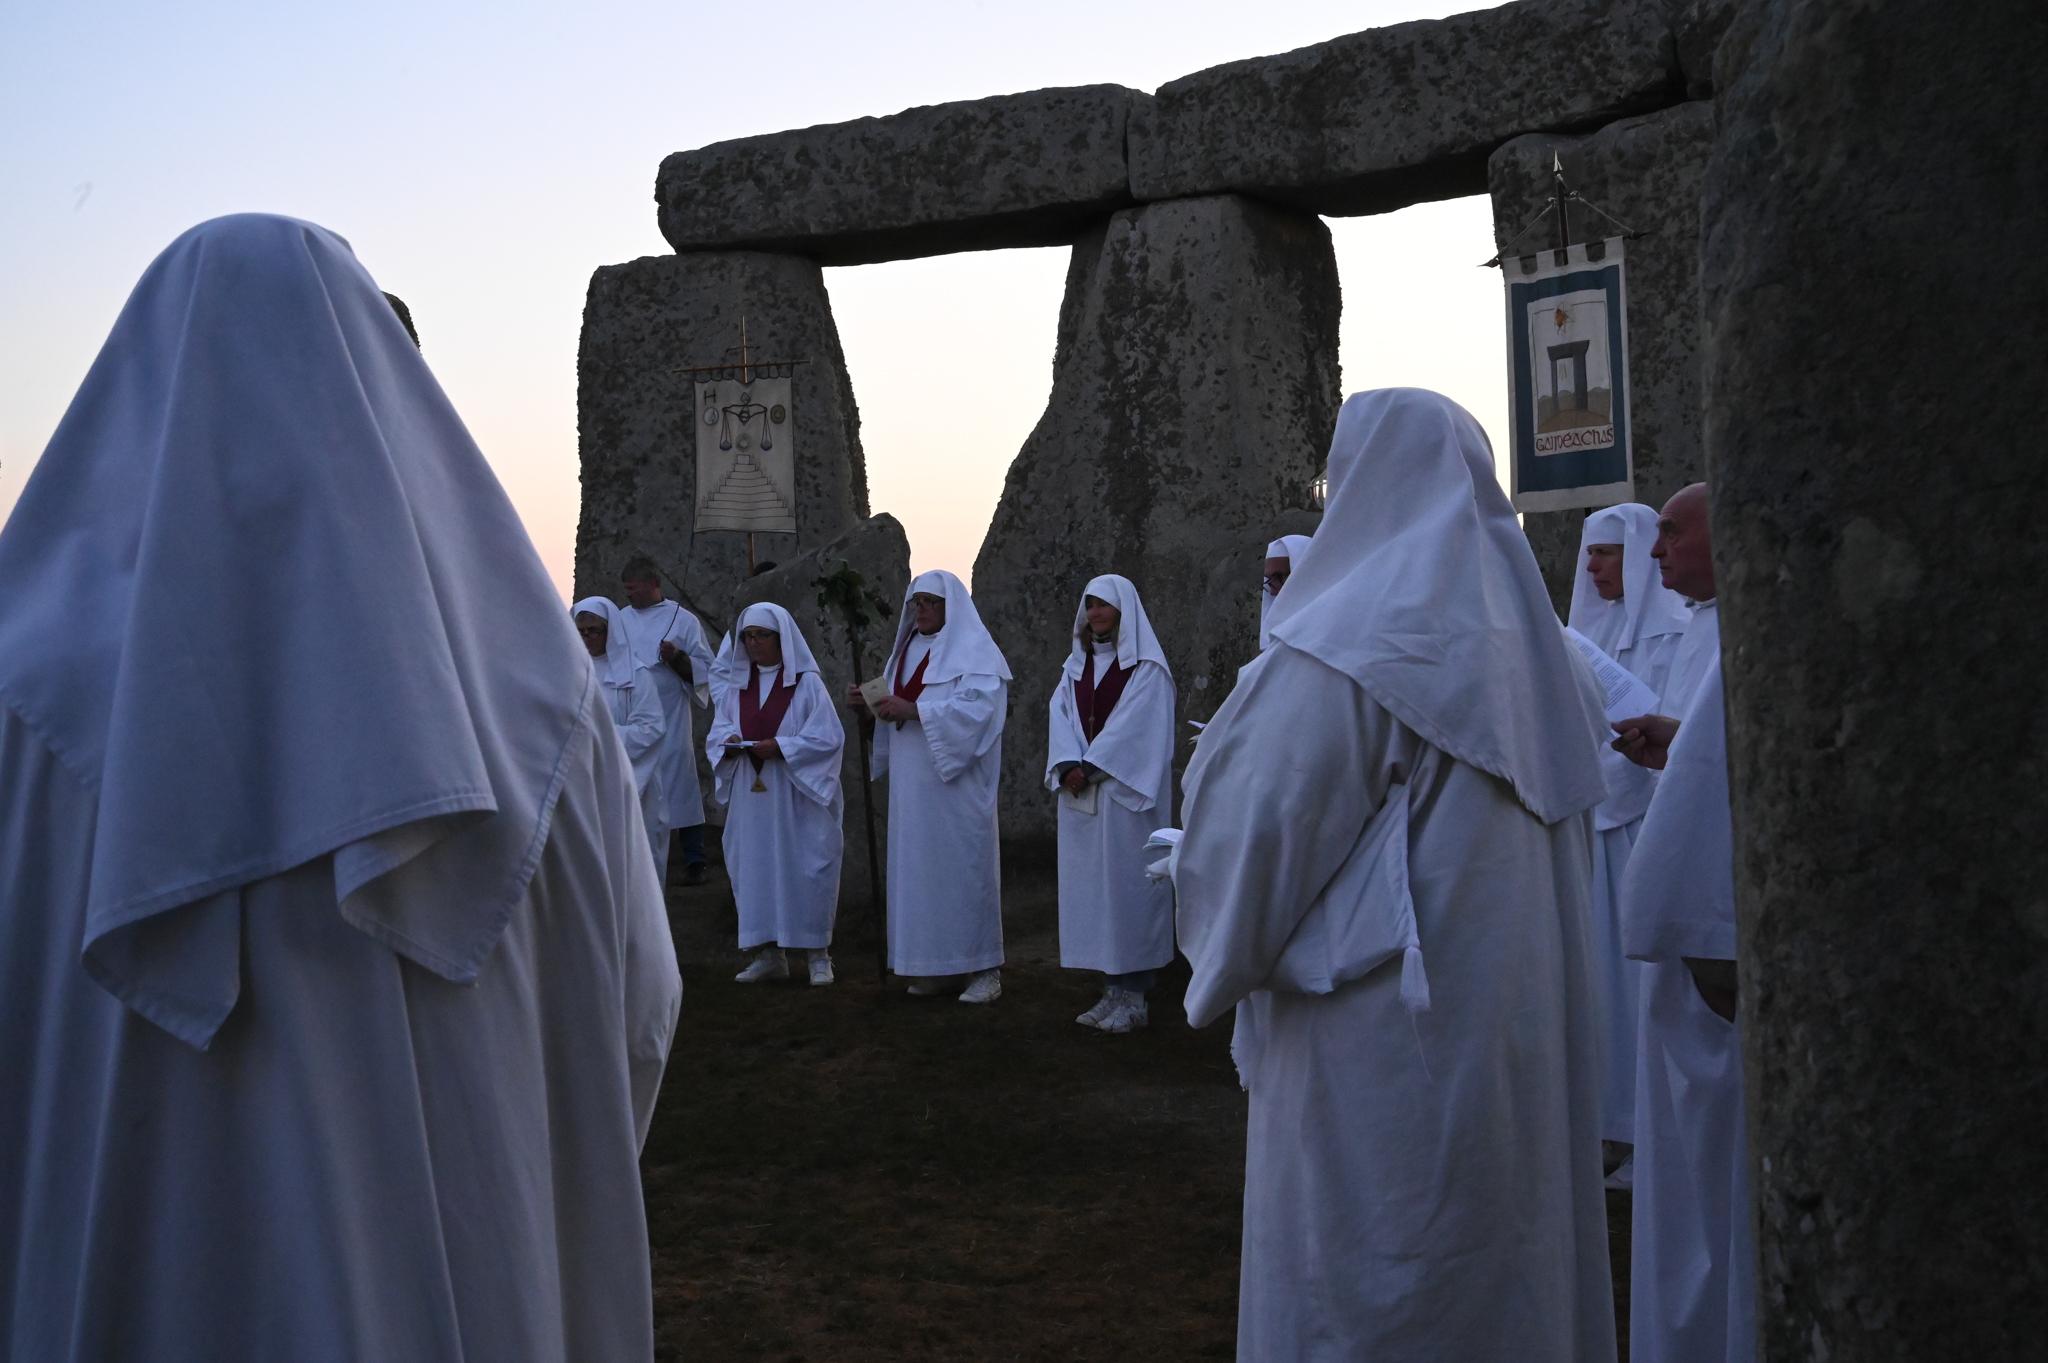 The Druids of Stone Henge